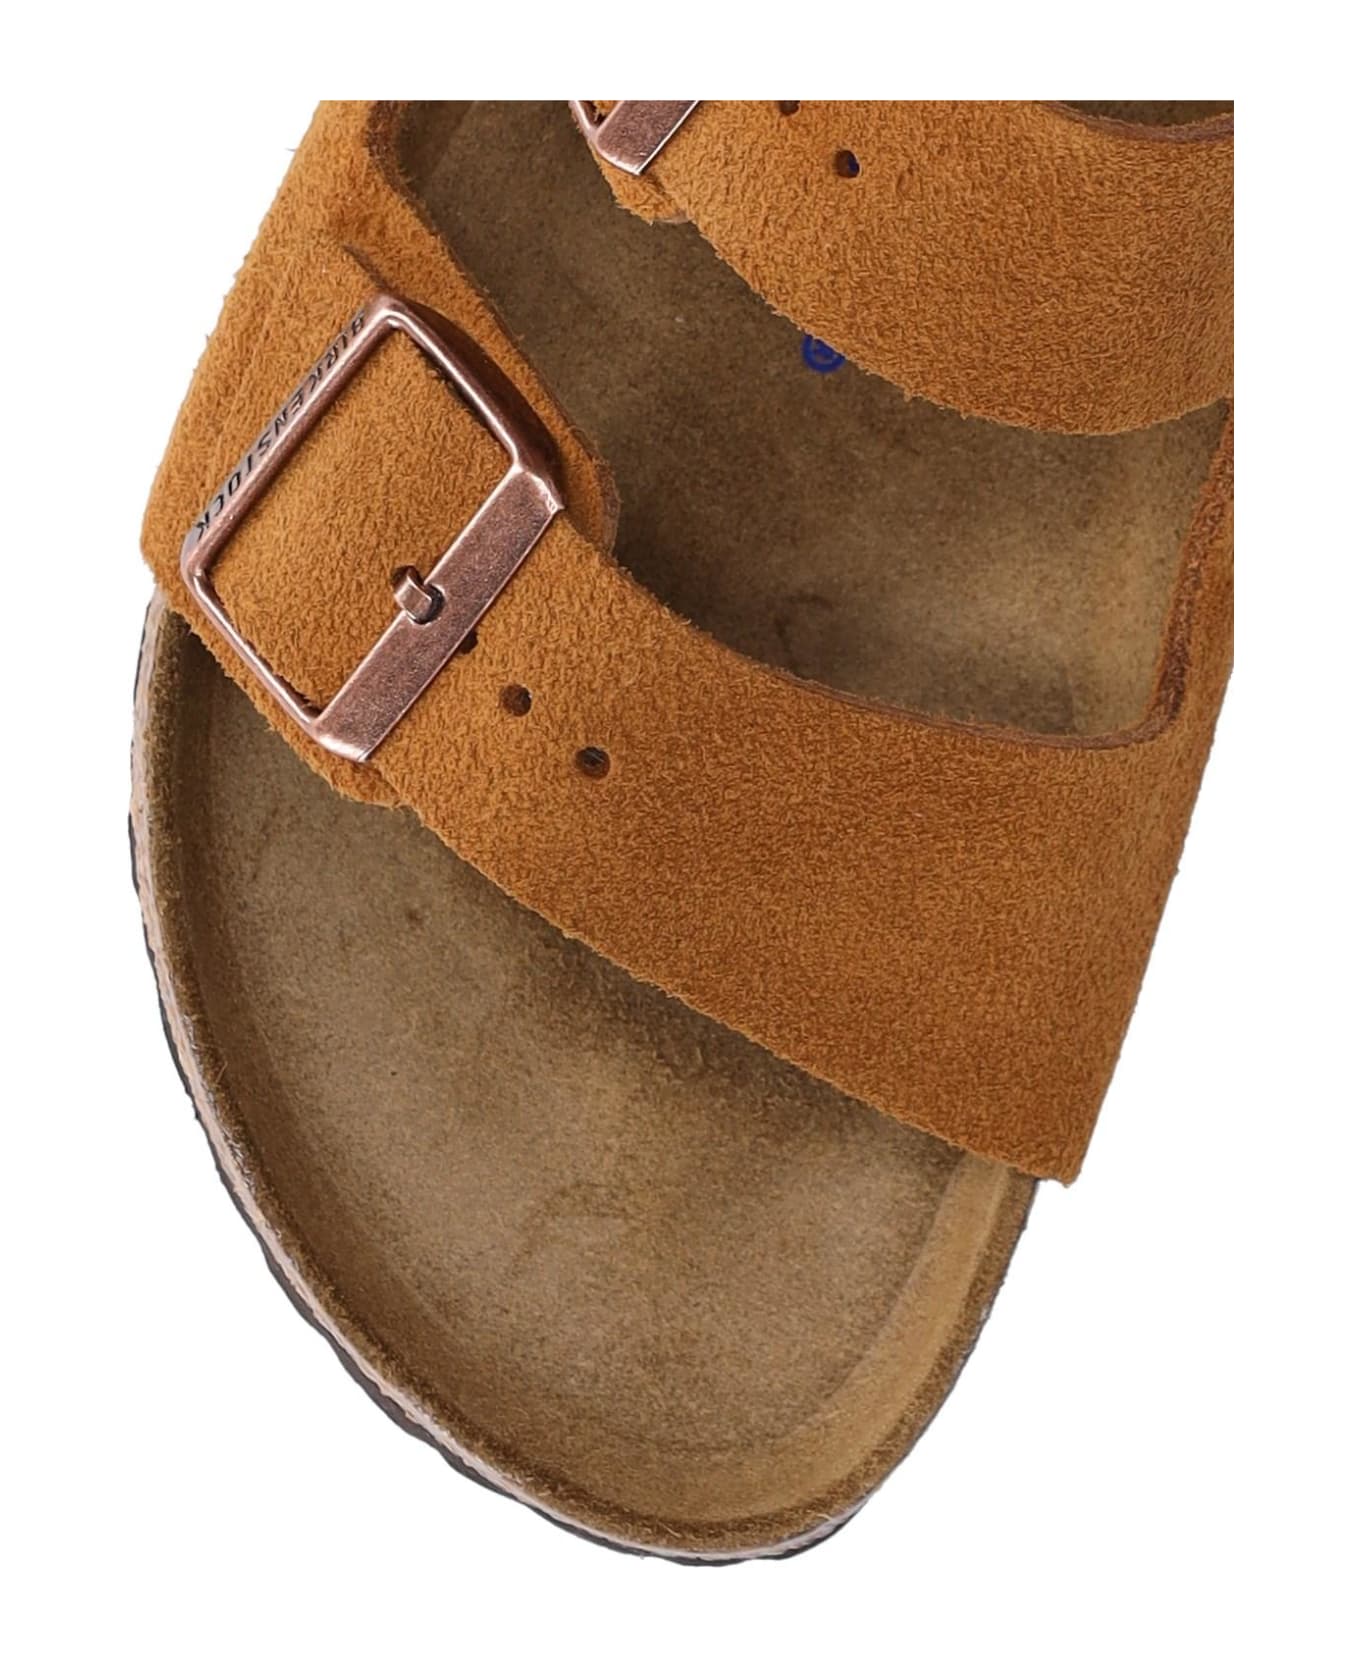 Birkenstock 'arizona' Sandals - Marrone フラットシューズ